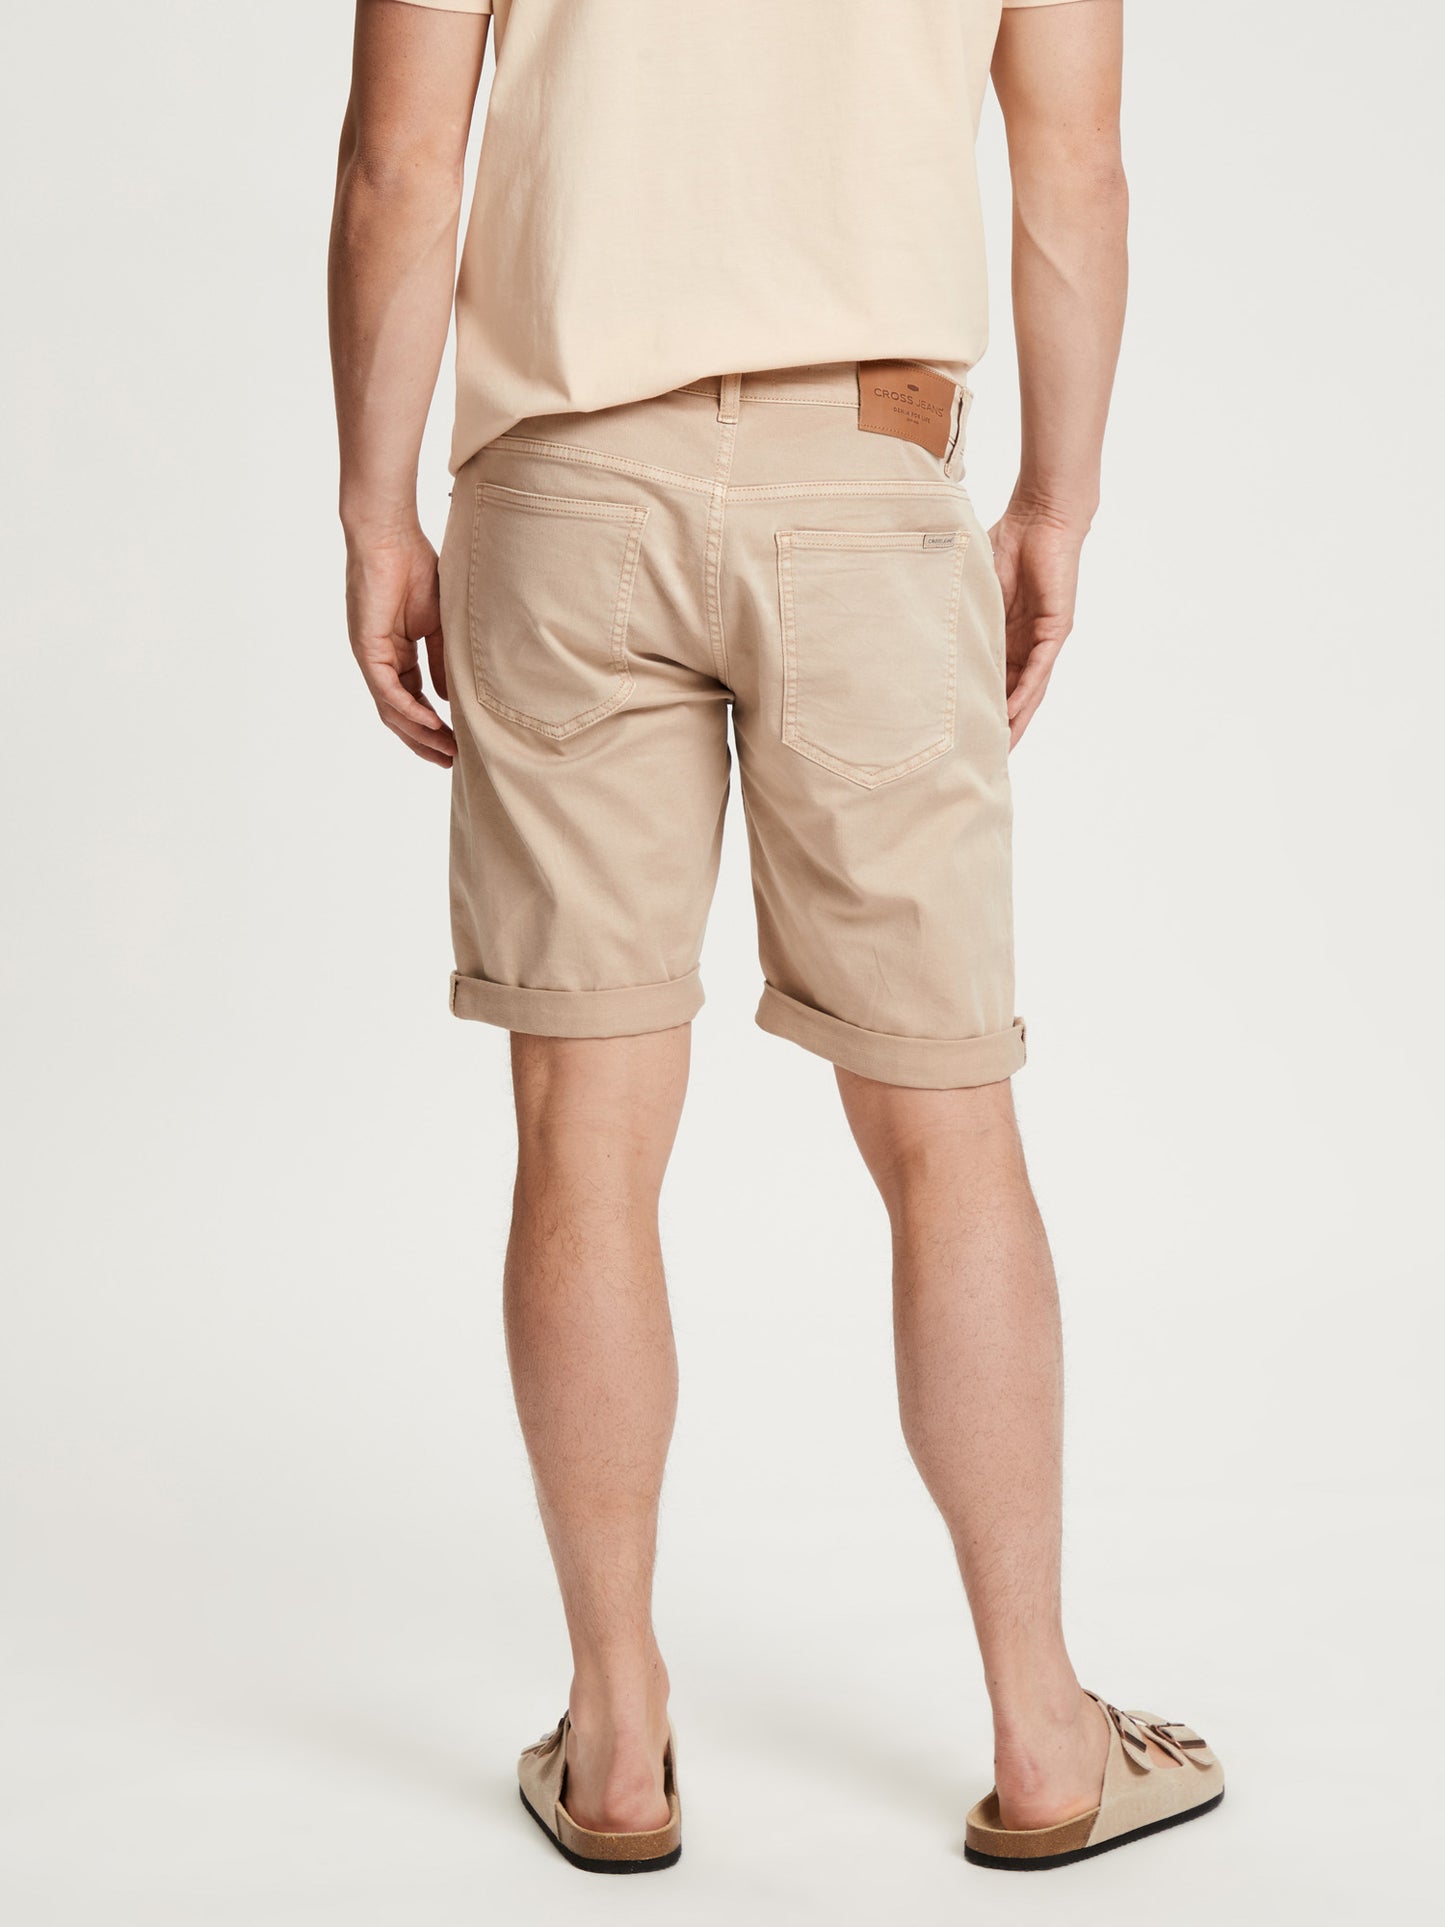 Leom men's shorts regular fit beige